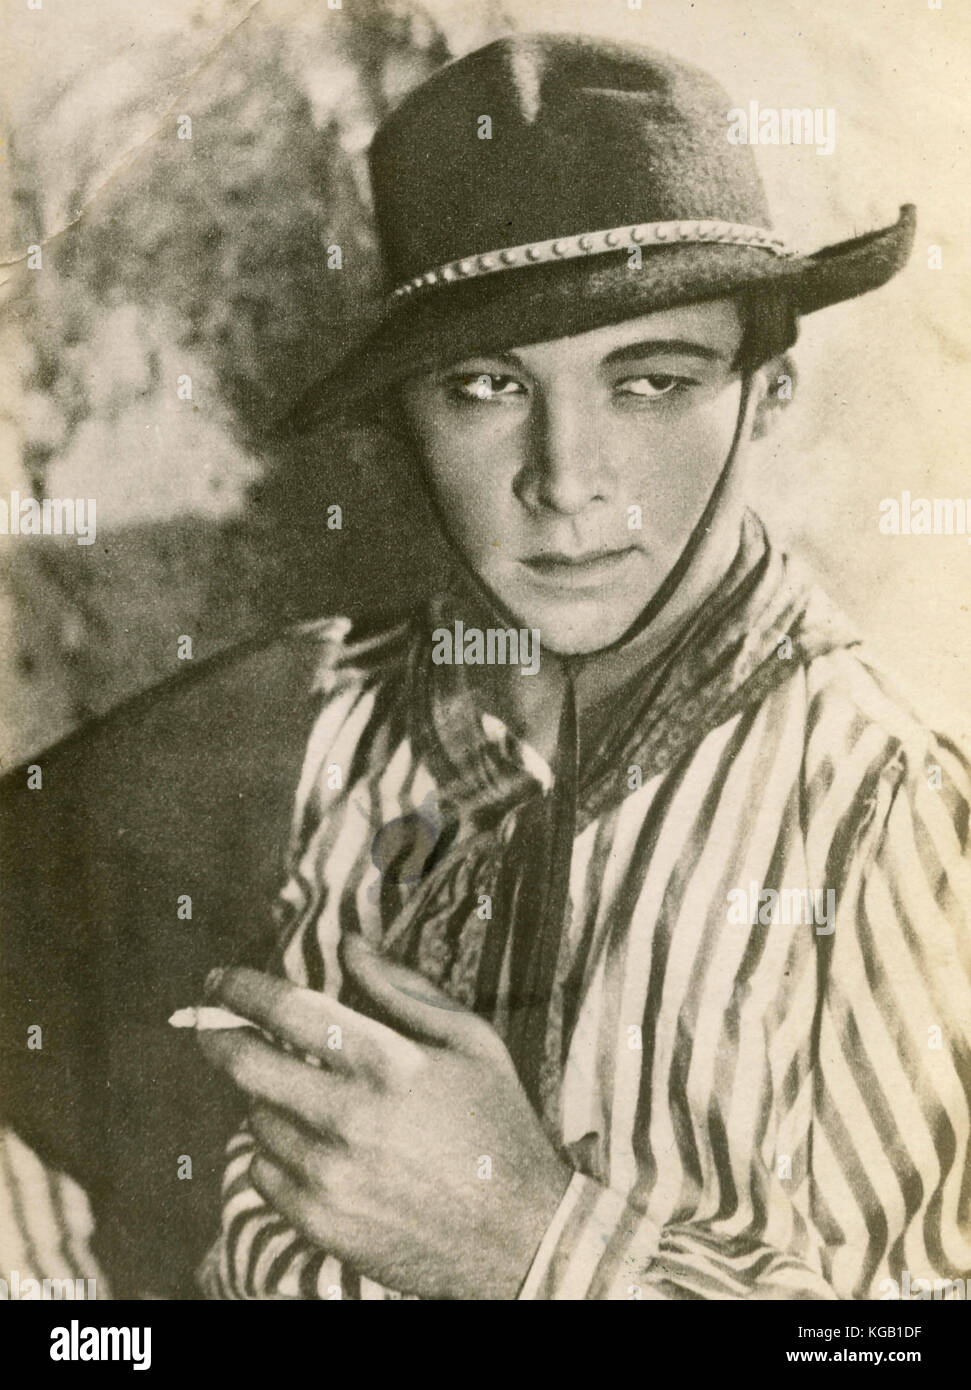 Italiano-nati attore americano Rodolfo Valentino come Julio nel film i quattro cavalieri dell'Apocalisse, 1921 Foto Stock